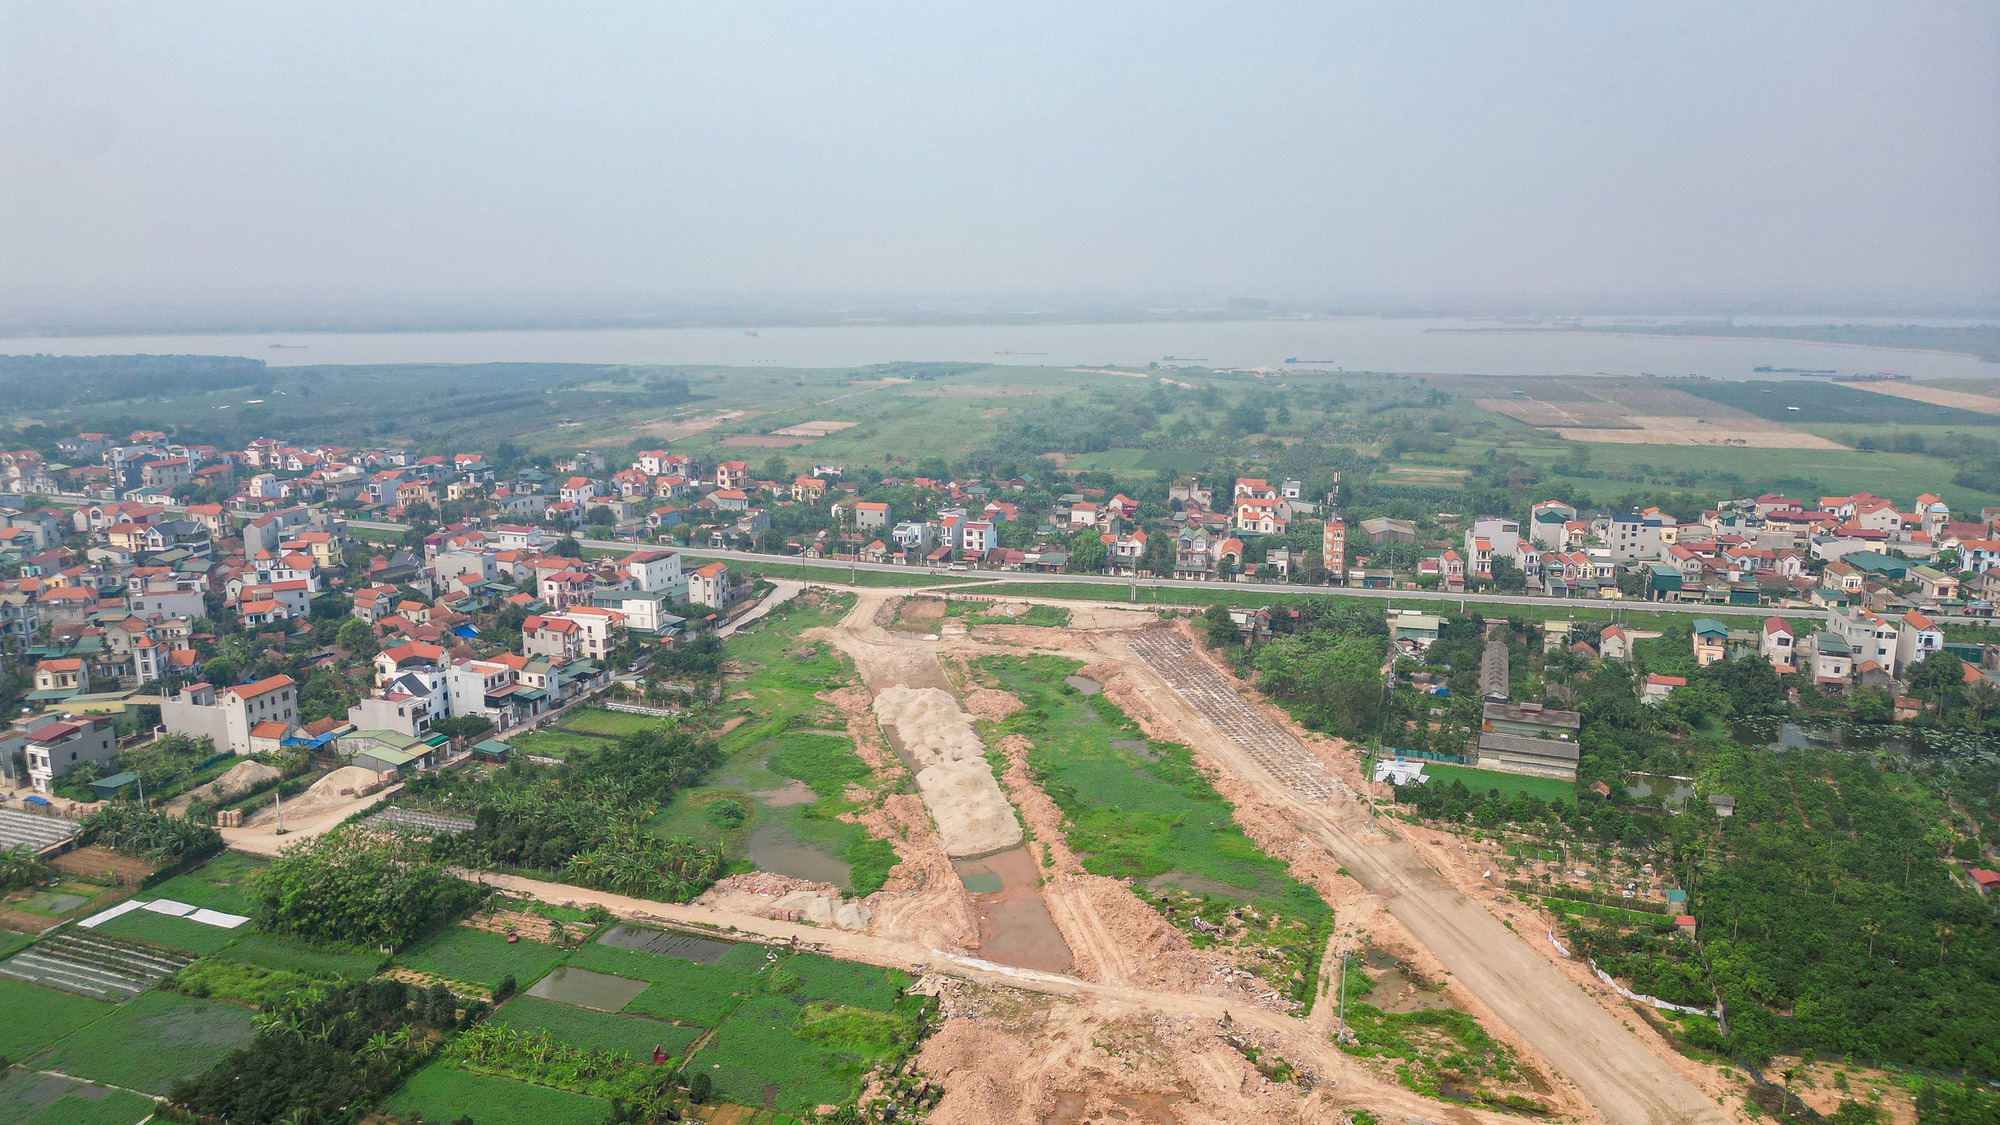 Toàn cảnh vị trí xây dựng cầu Hồng Hà vượt sông Hồng trị giá gần 10.000 tỉ đồng- Ảnh 5.